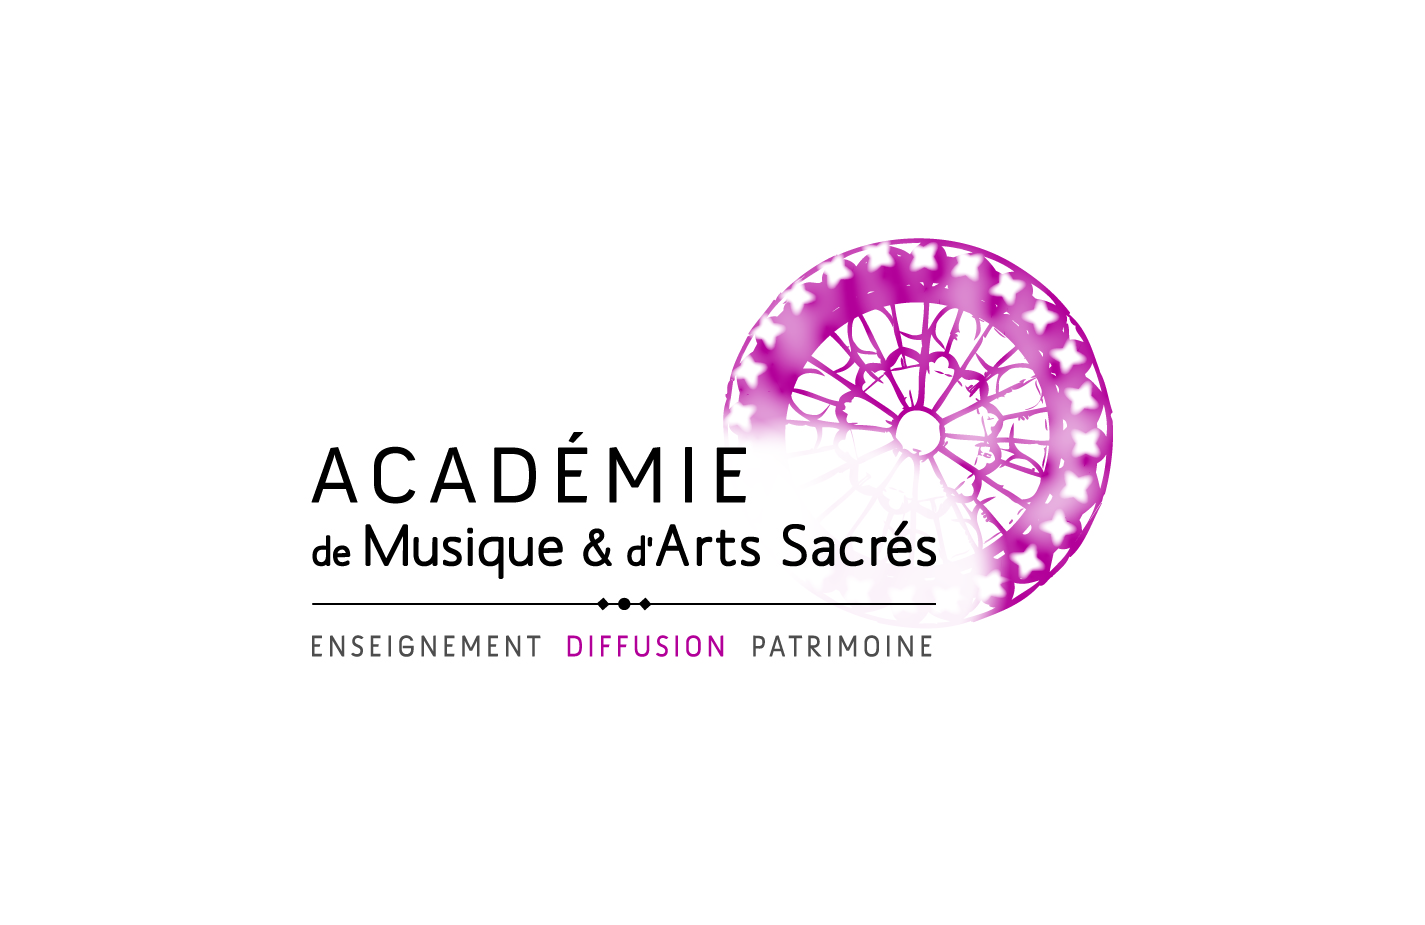 http://www.academie-musique-arts-sacres.fr/